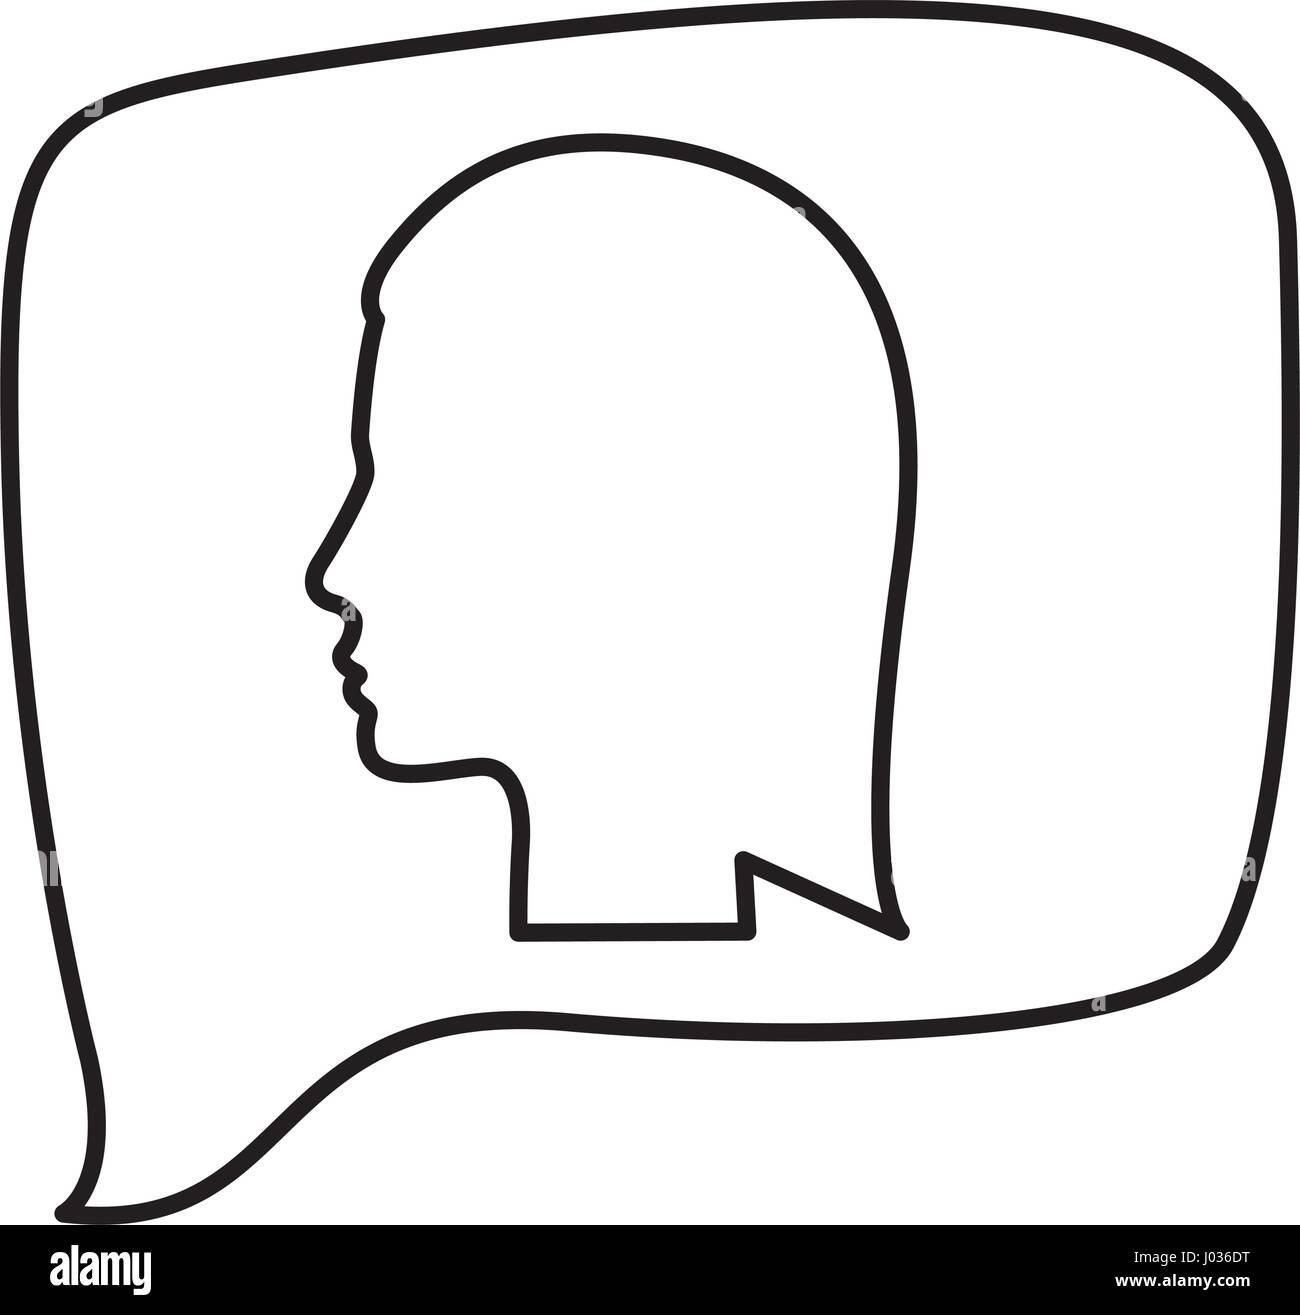 L'allégement de silhouette silhouette rectangulaire avec la tête d'une femme de la parole Illustration de Vecteur